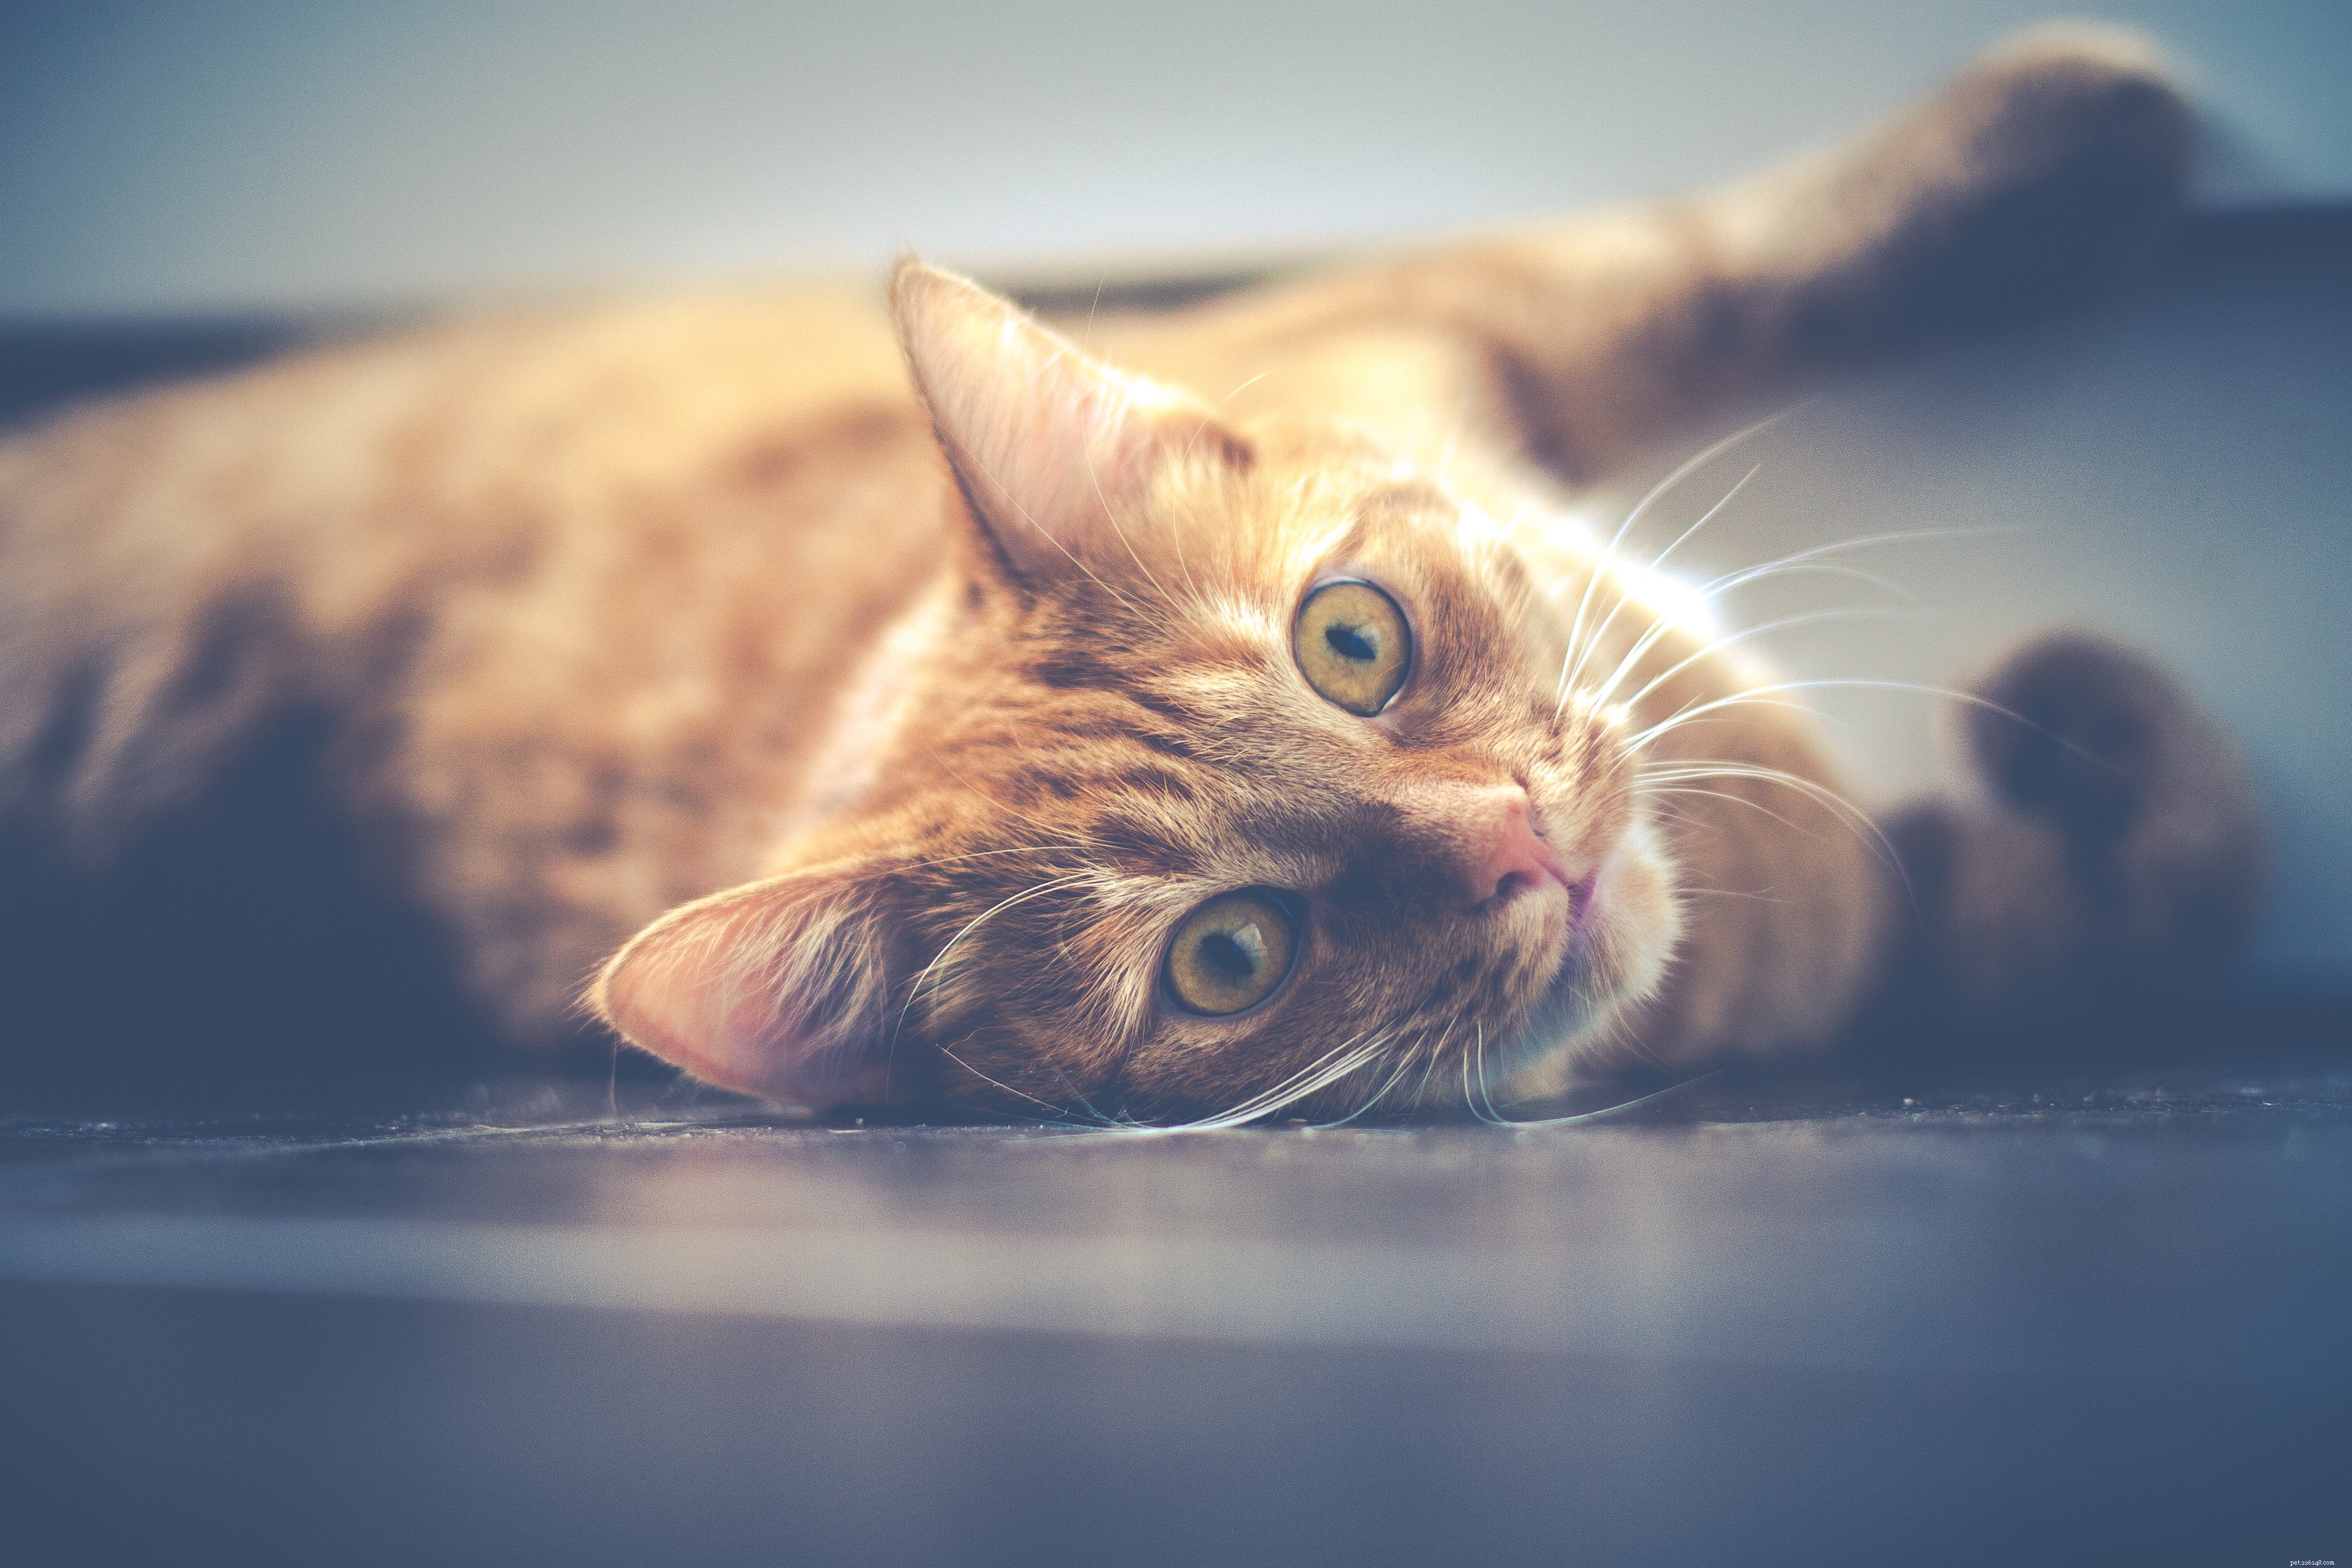 Chiedi a un veterinario:perché il mio gatto sembra più attivo di notte?